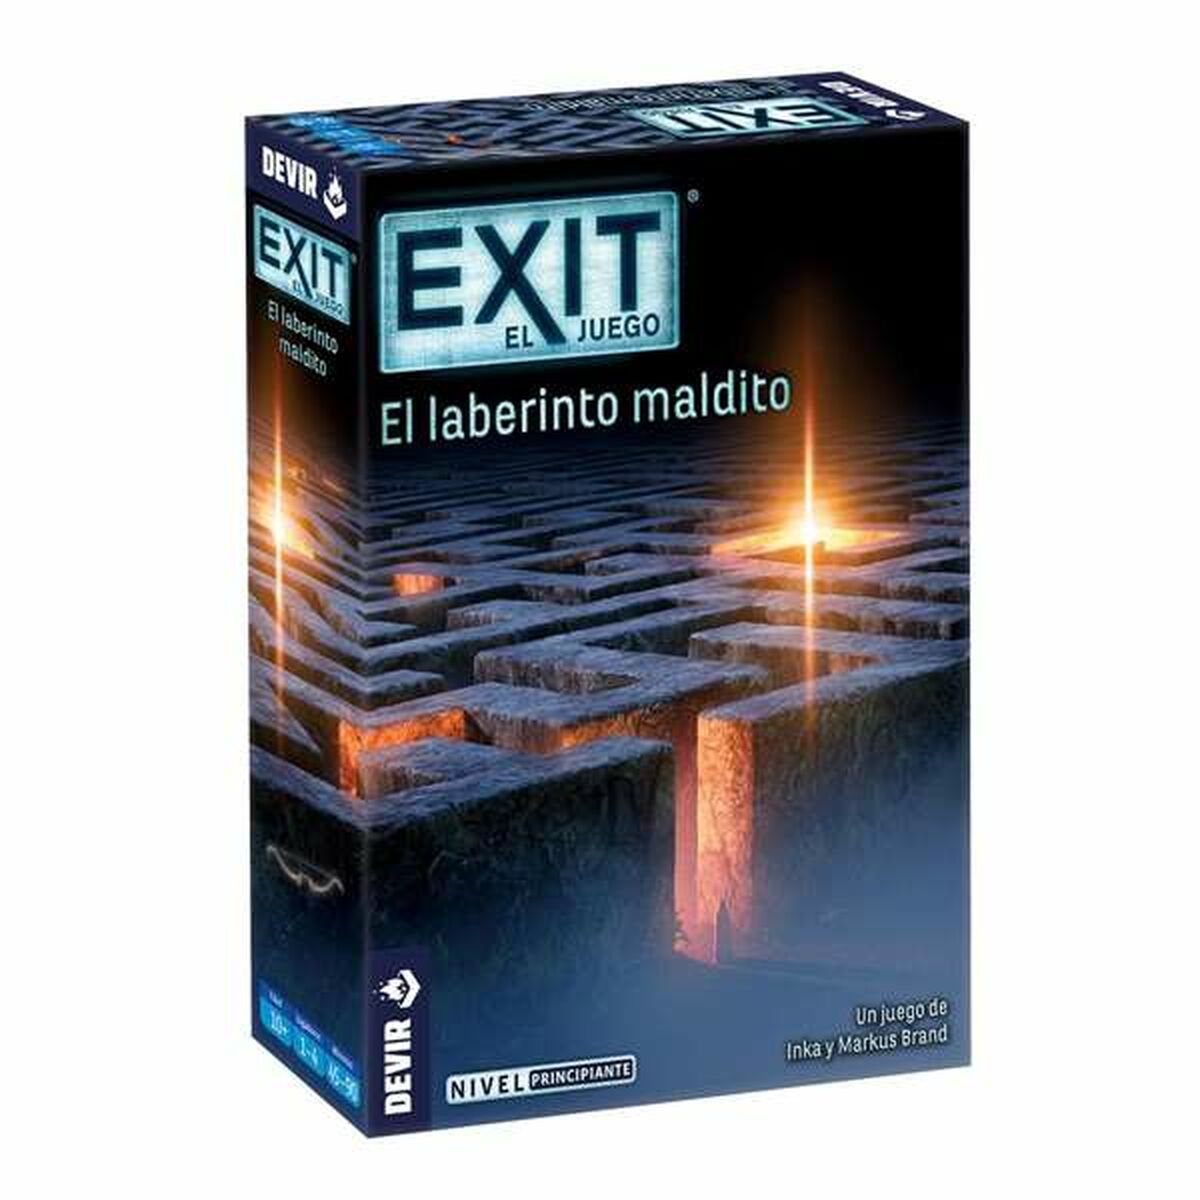 Osta tuote Lautapeli Devir Exit El Laberinto Maldito ES verkkokaupastamme Korhone: Lelut & Asut 20% alennuksella koodilla VIIKONLOPPU